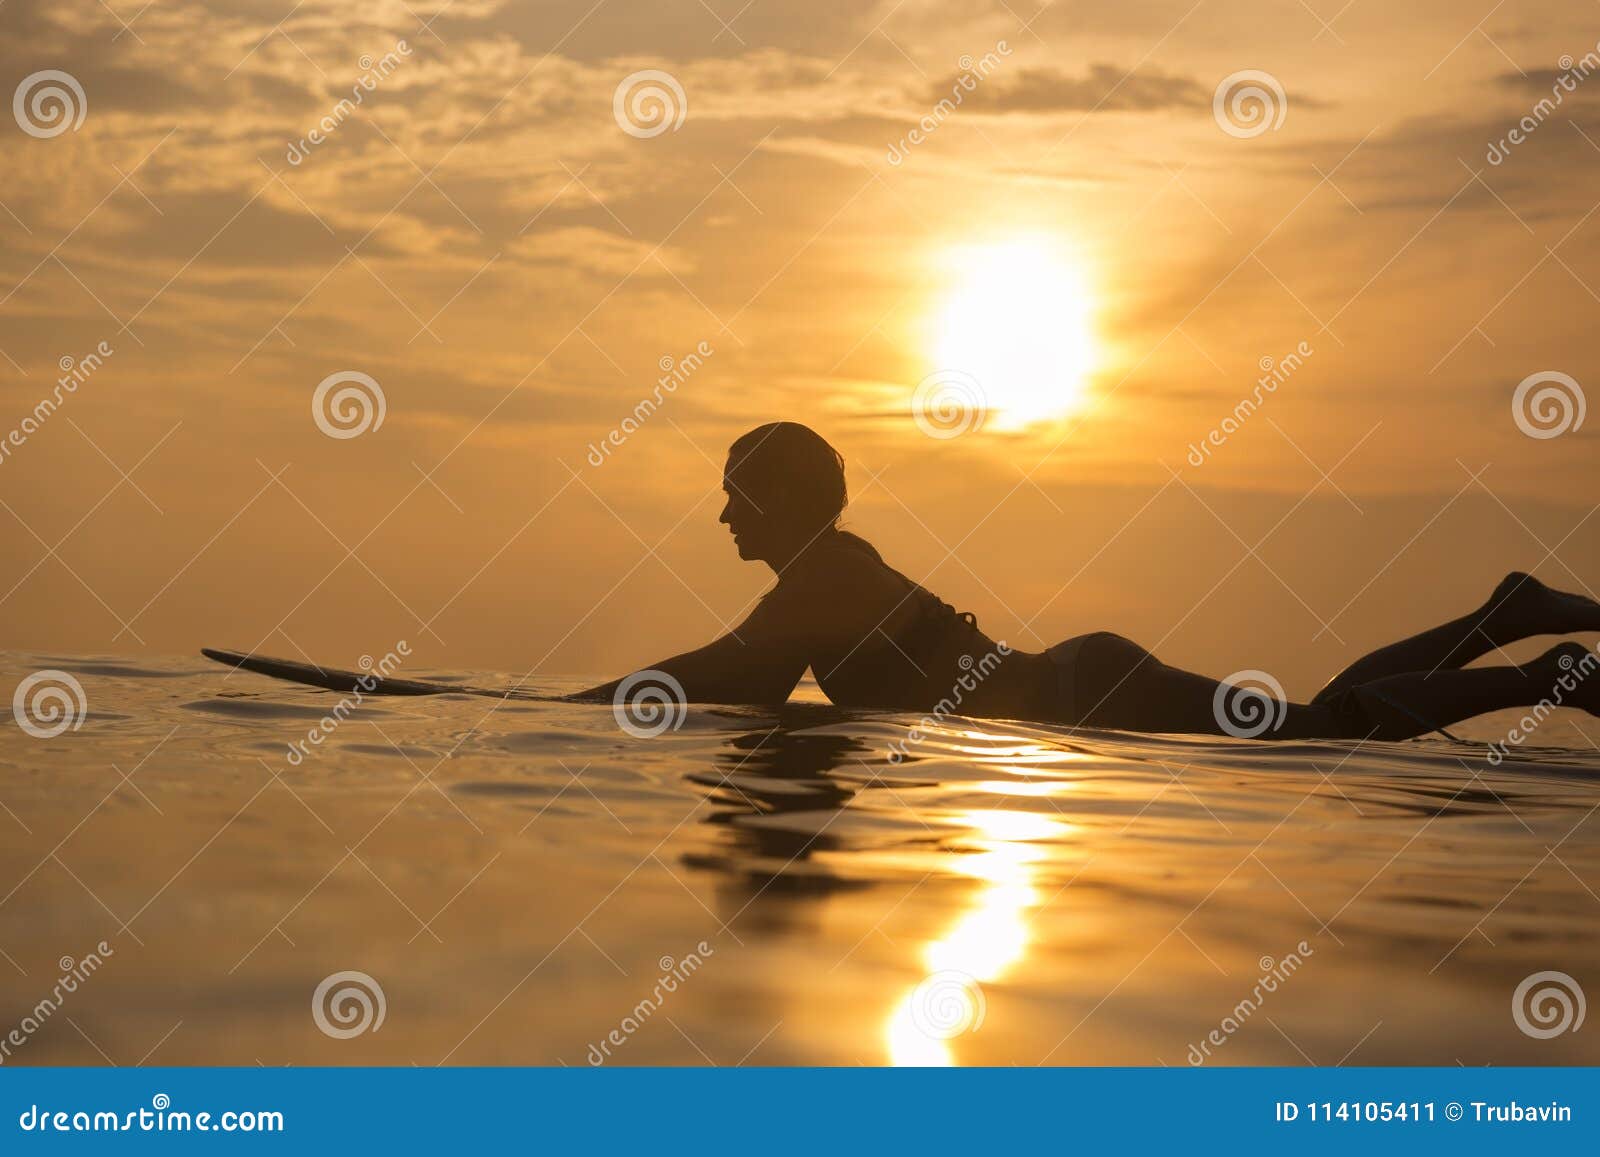 Fille De Surfer Dans Locéan Au Temps De Coucher Du Soleil